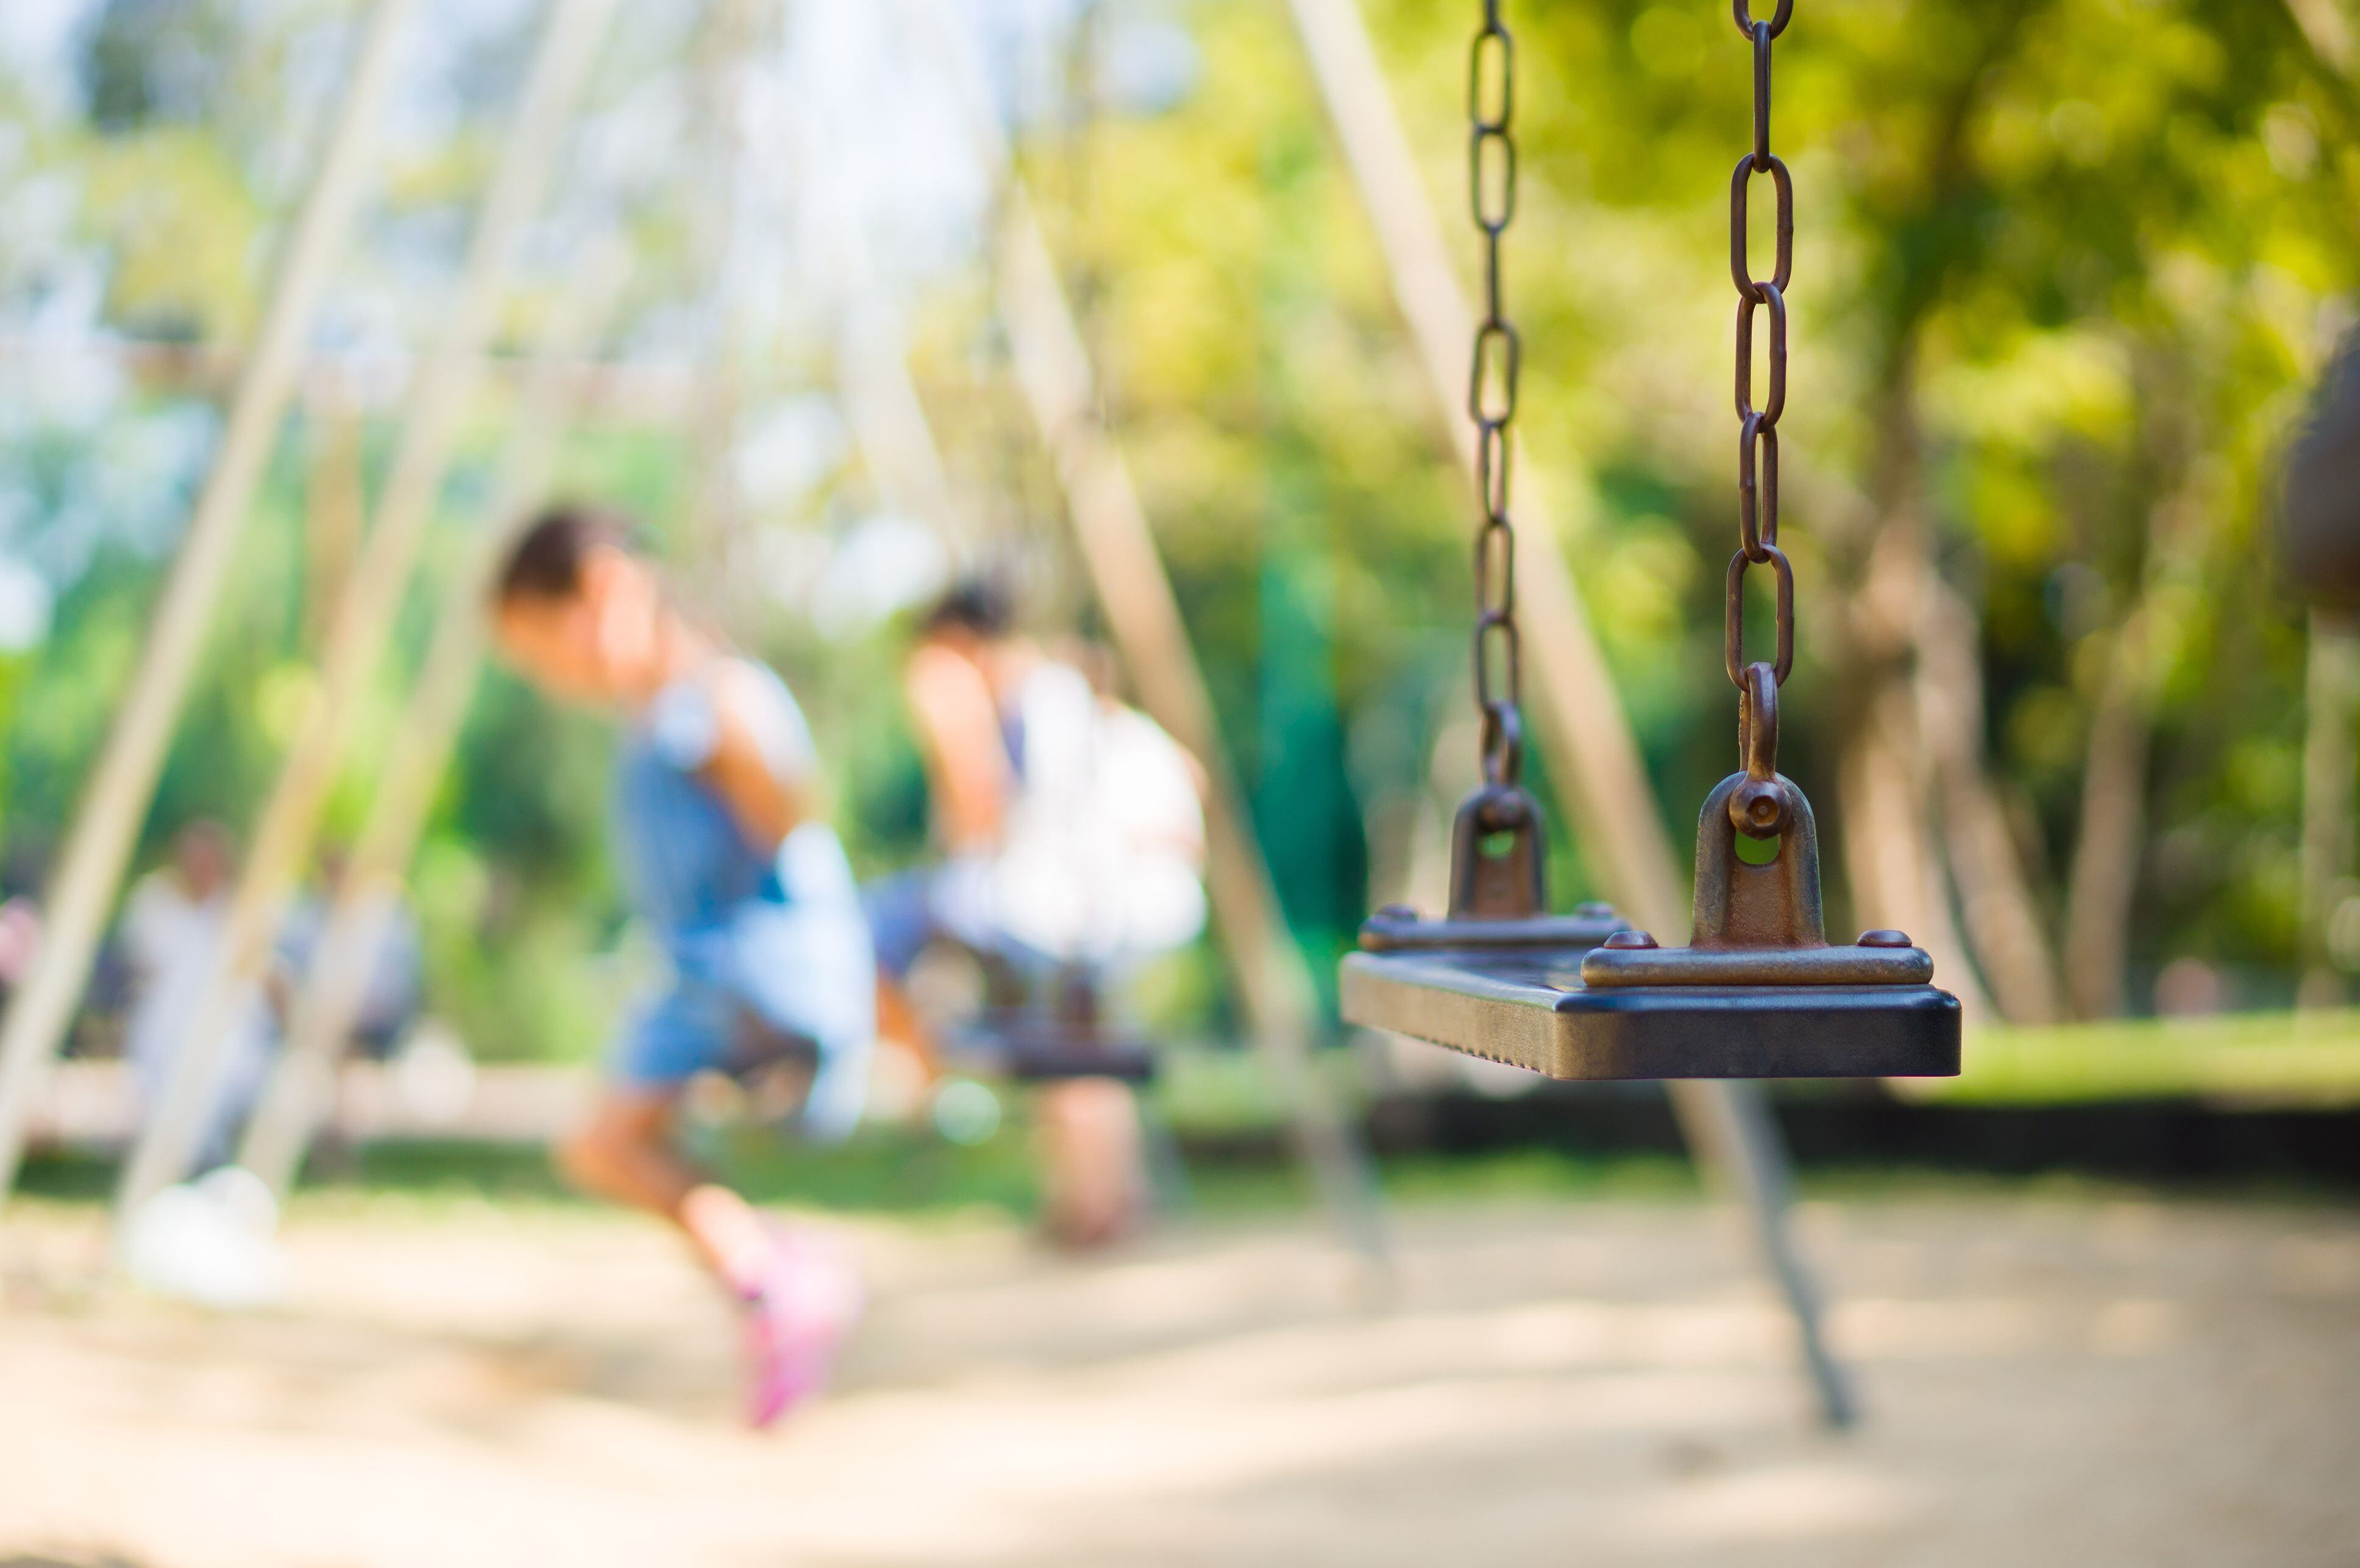 Columpio vacío en un parque infantil (Shutterstock)